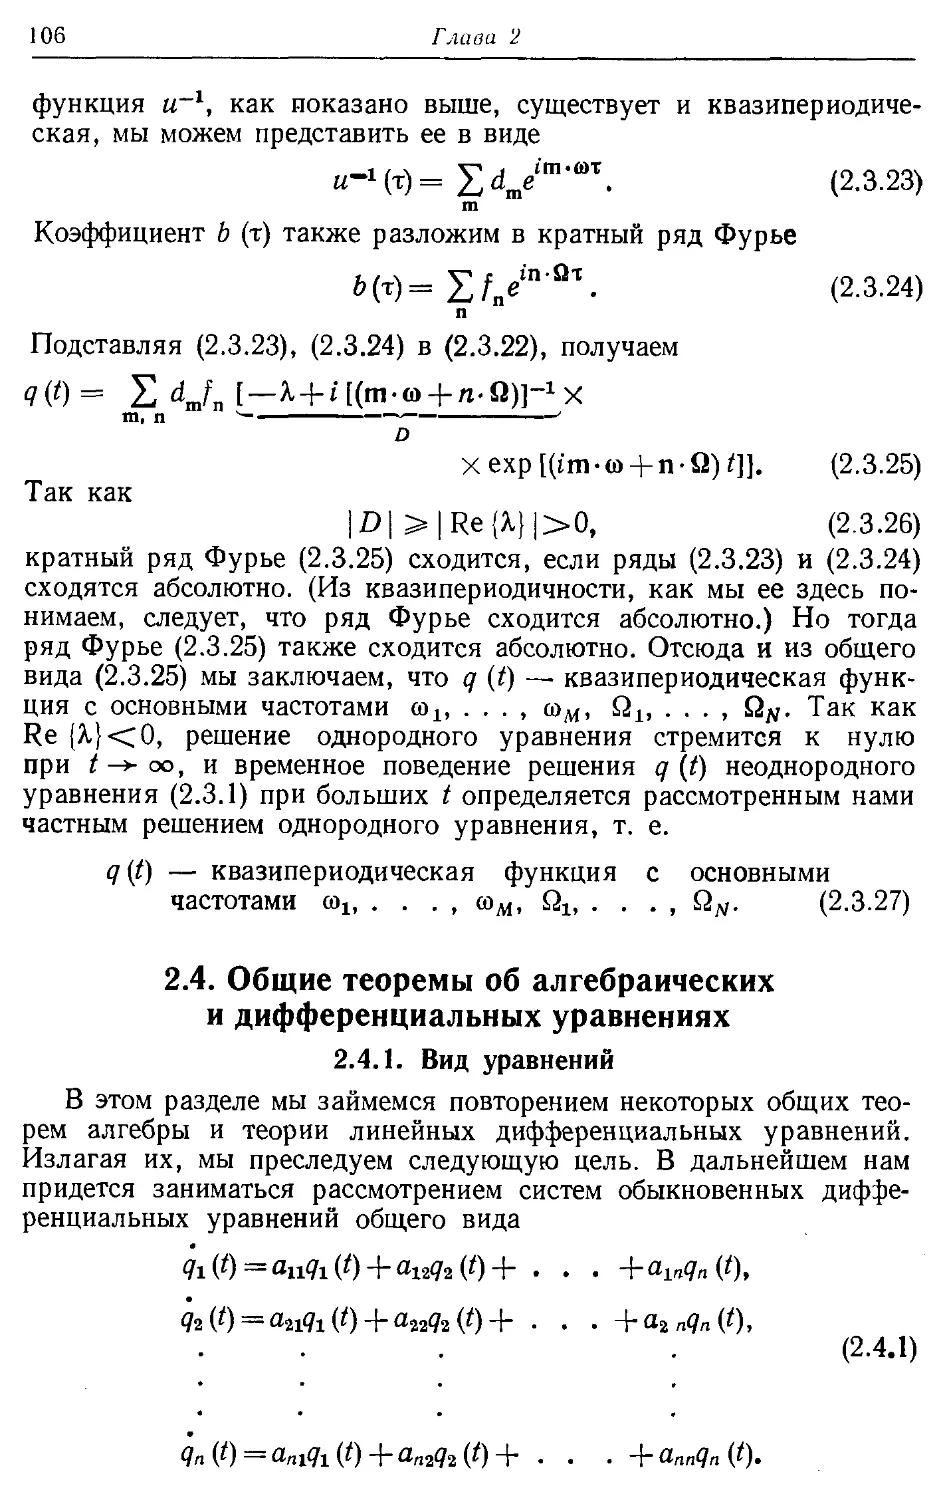 2.4. Общие теоремы об алгебраических и дифференциальных уравнениях
2.4.1. Вид уравнений